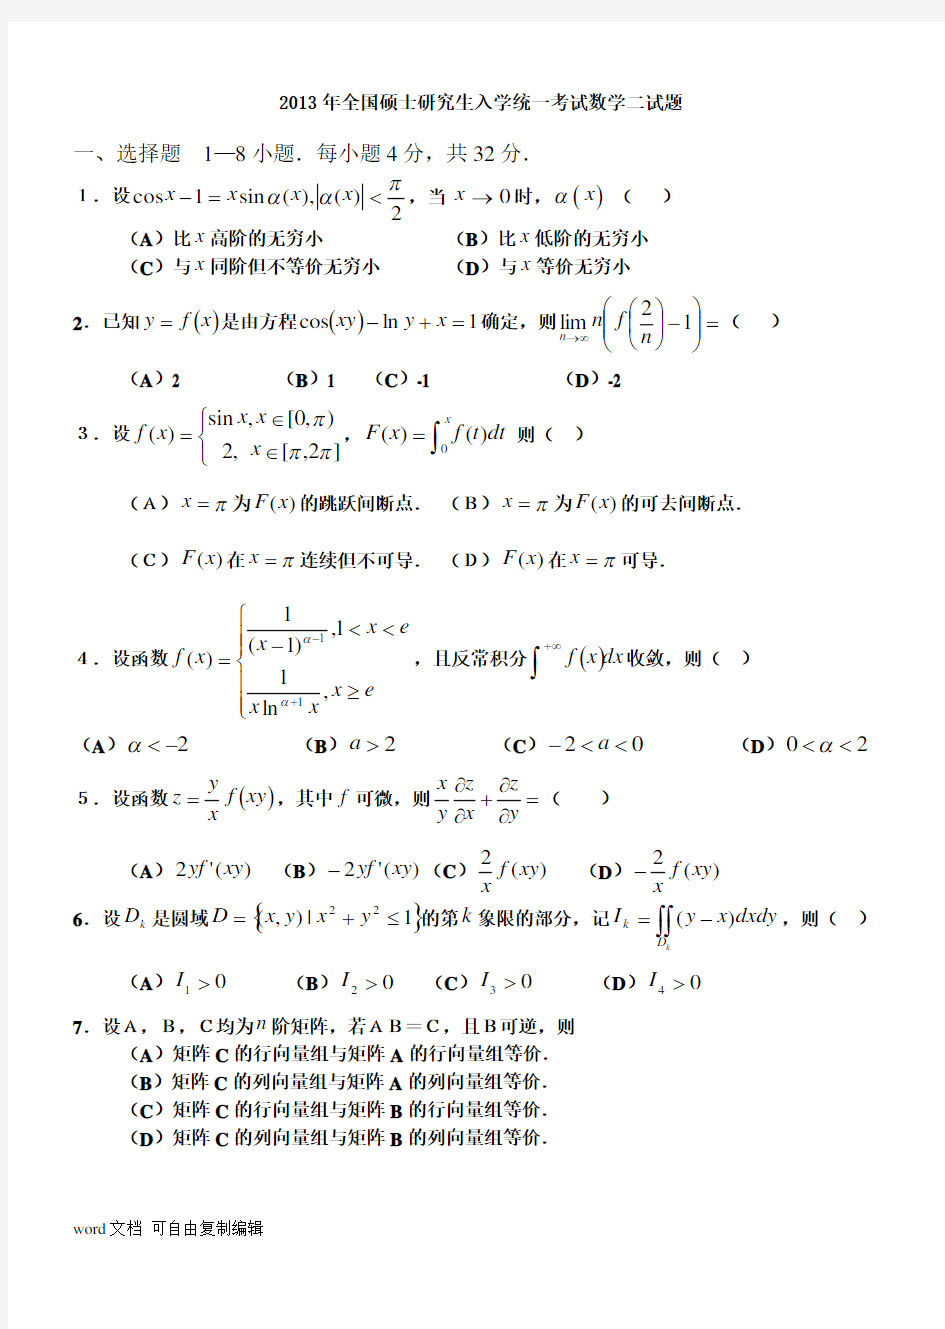 考研数学二历年真题及答案详解(2003—2013)